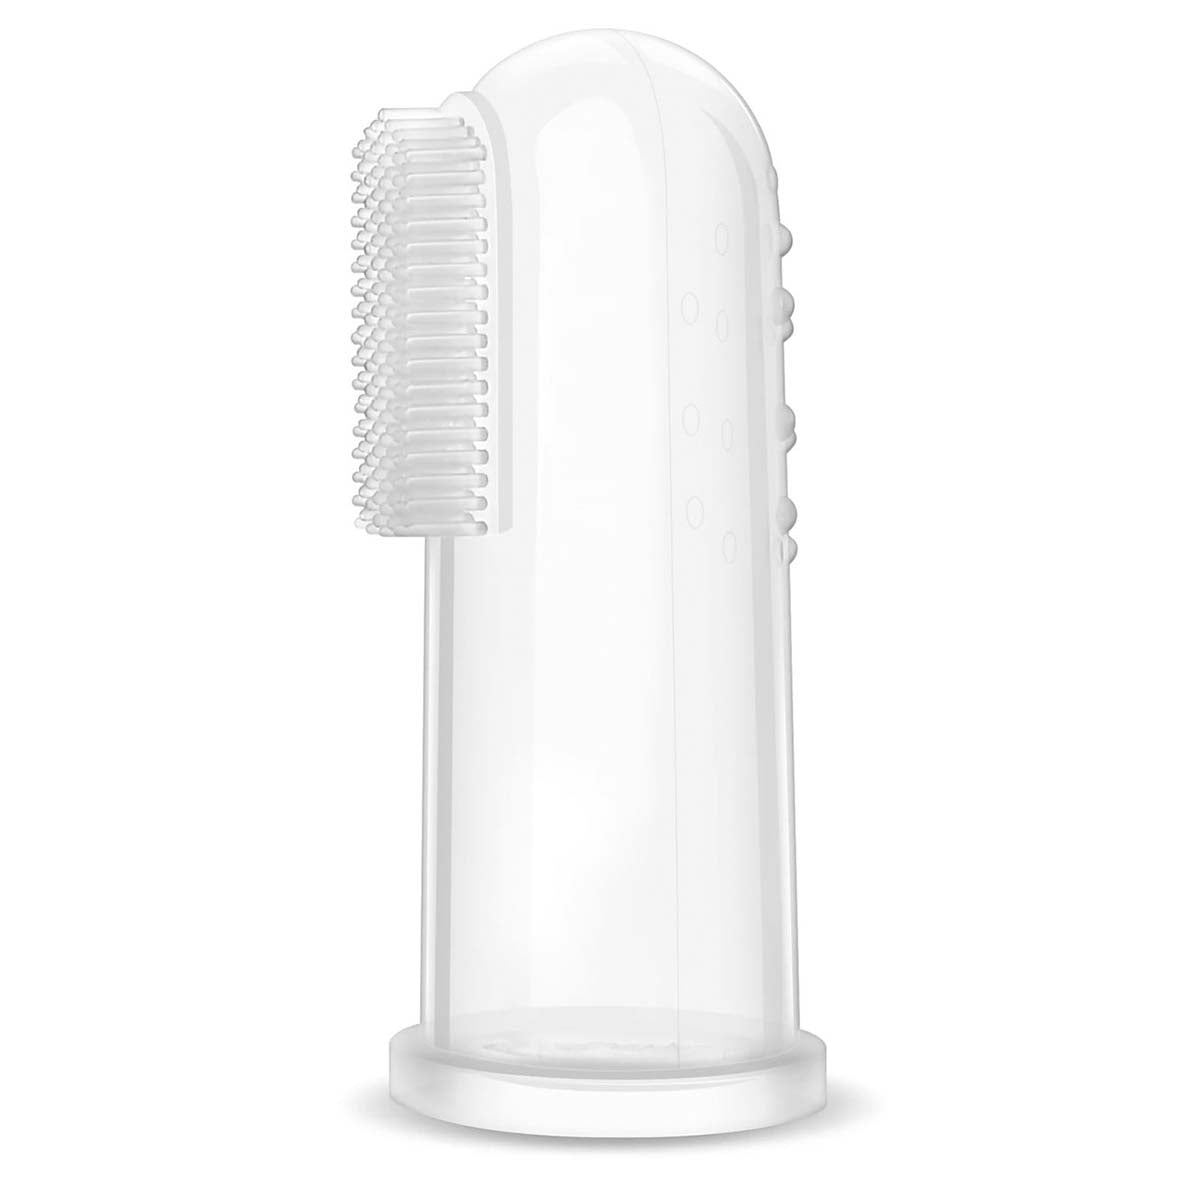 De Philips Avent baby verzorgingsset bevat een neuszuigertje, een nagelschaartje, nagelknippertje, vijltjes en zachte borstel en kammetje in een etuitje. De silicone vingertandenborstel maakt de set compleet. VanZus.